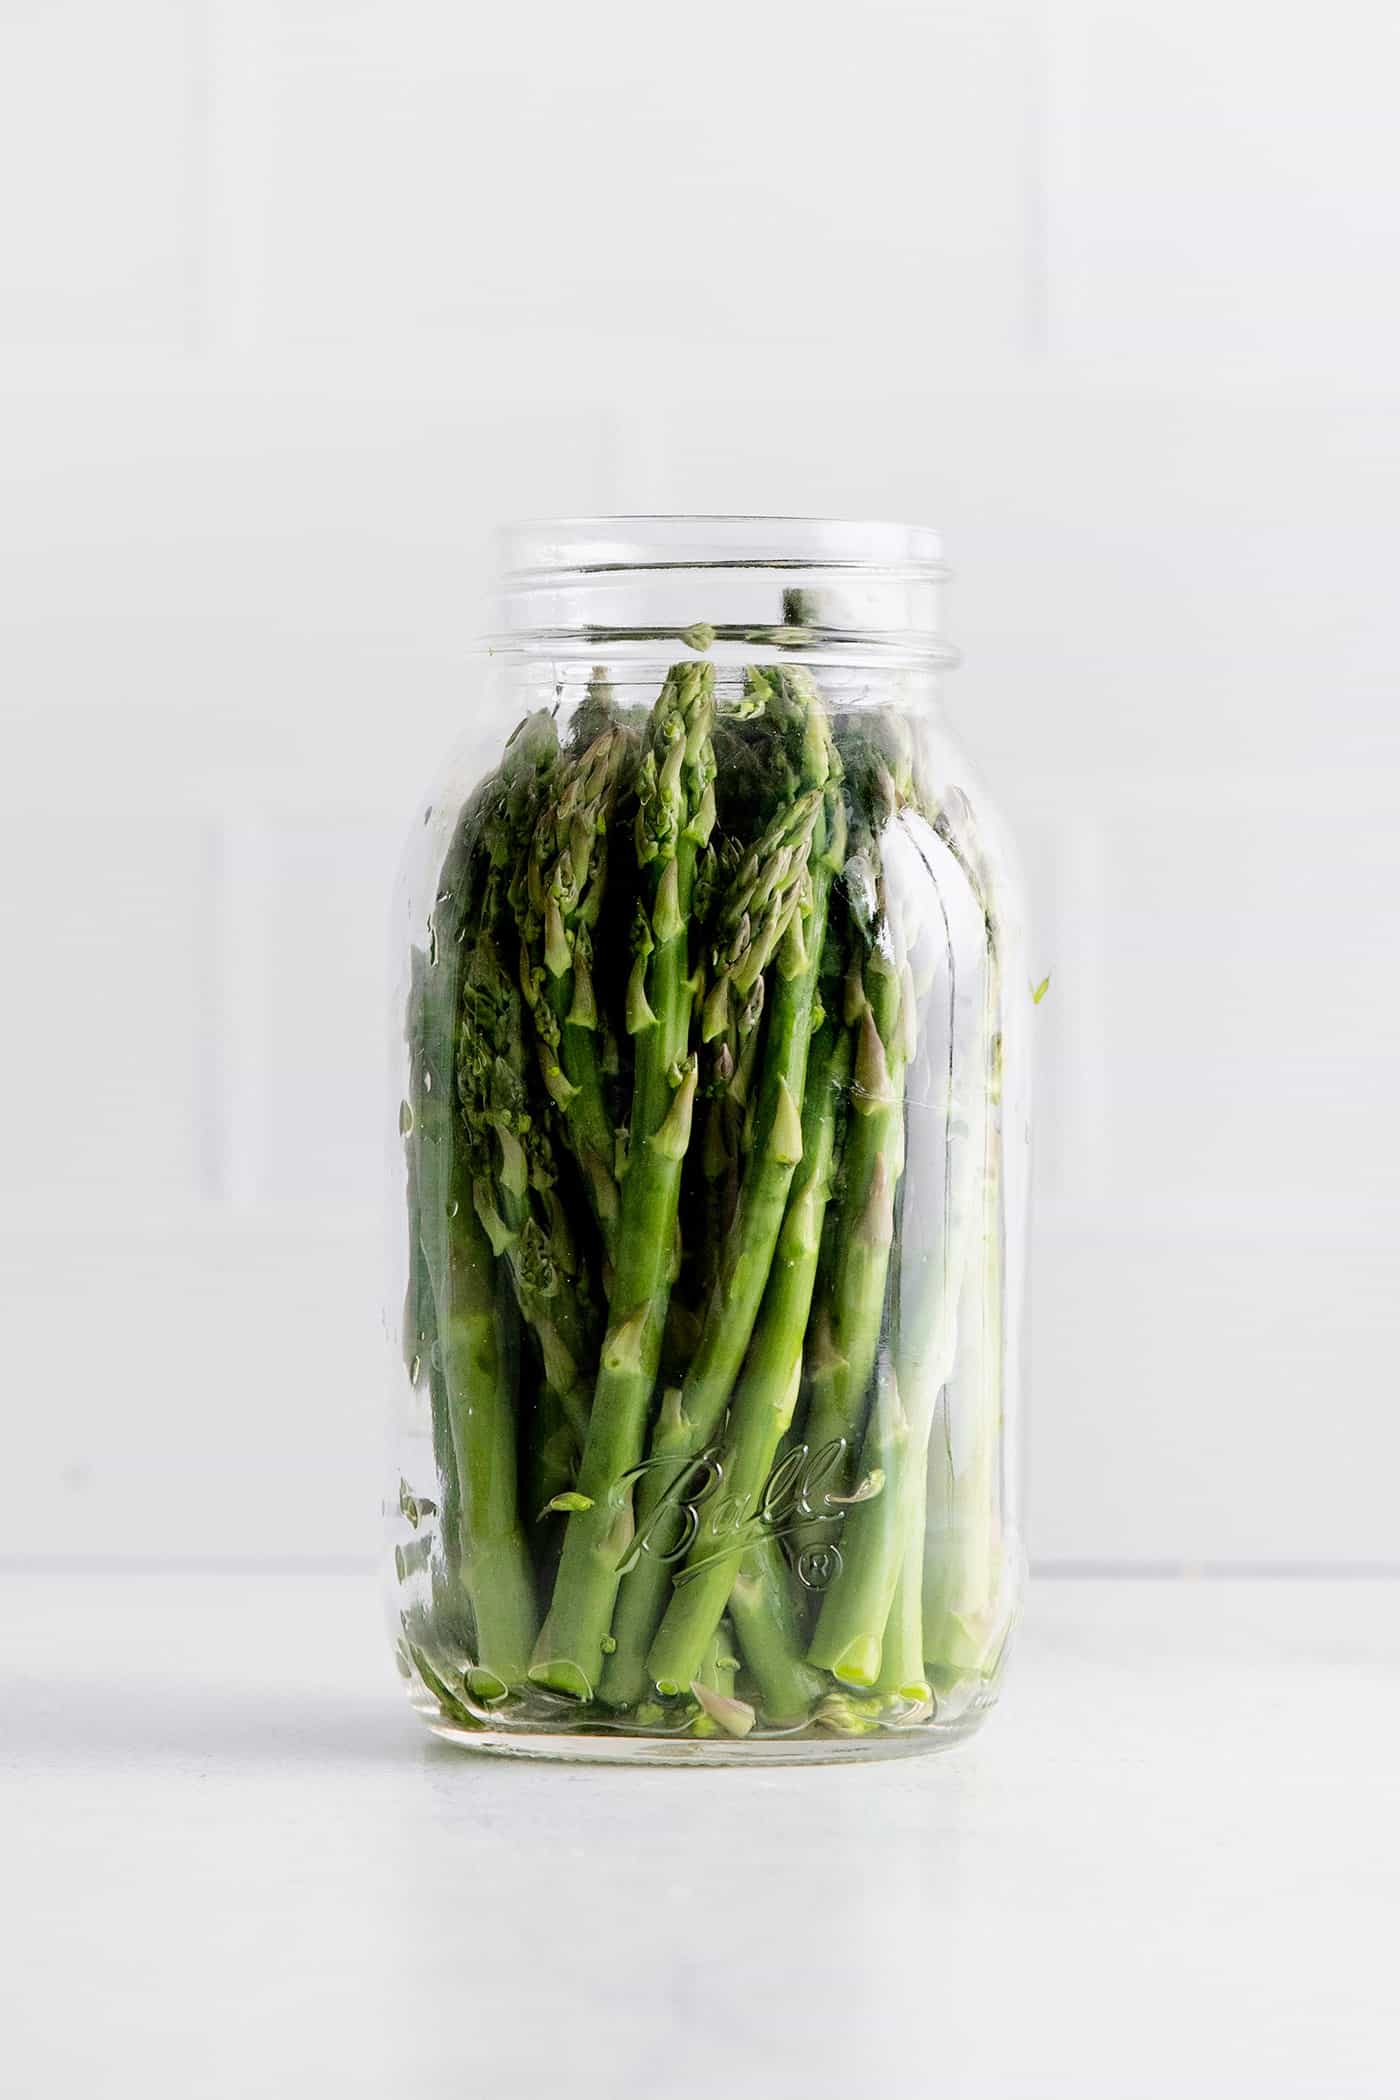 A jar of asparagus